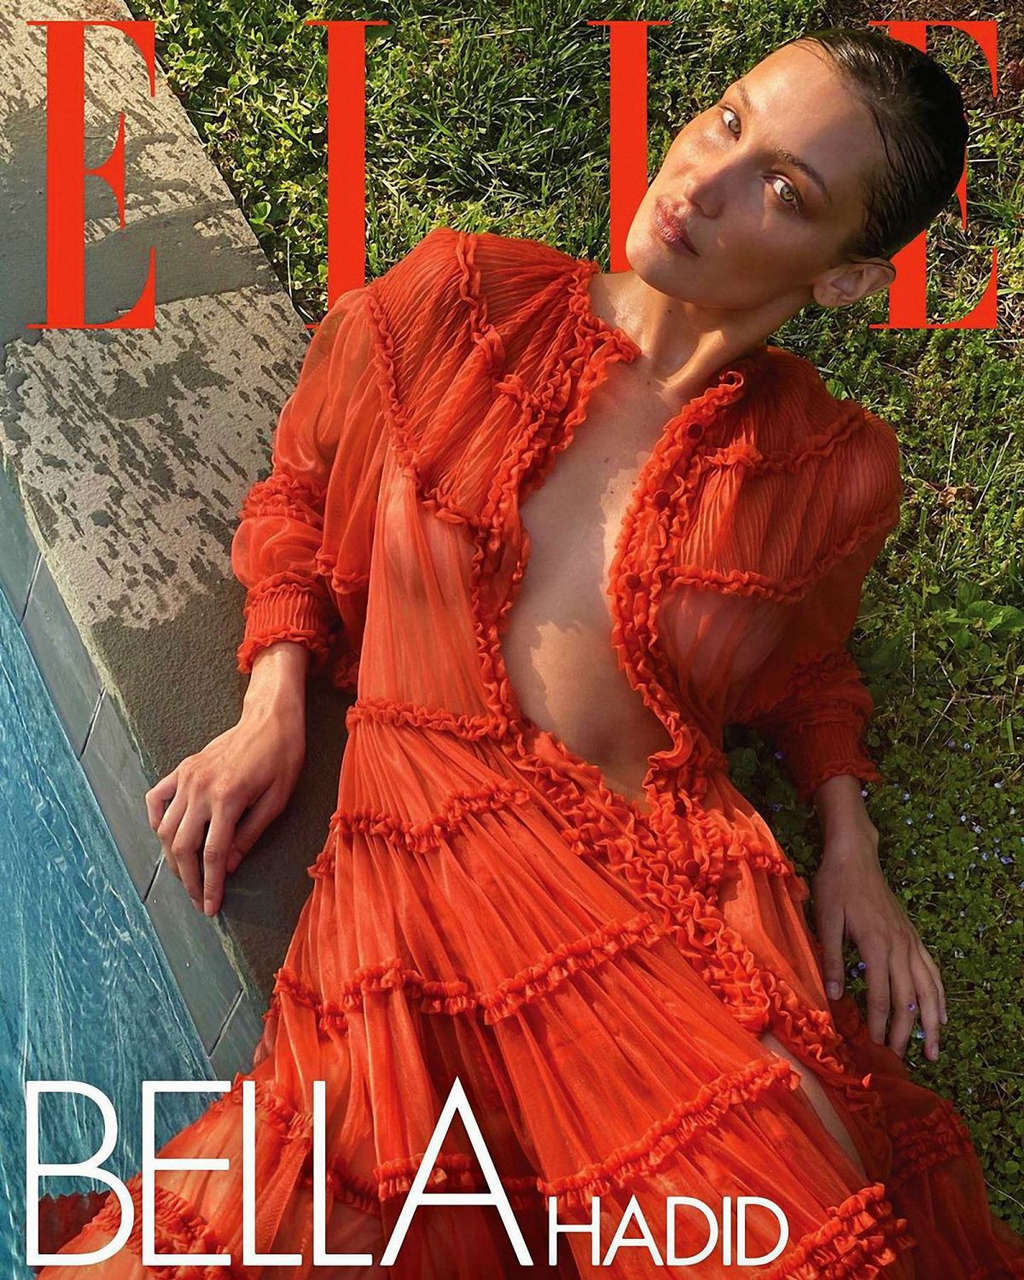 Bella Hadid For Elle Magazine August